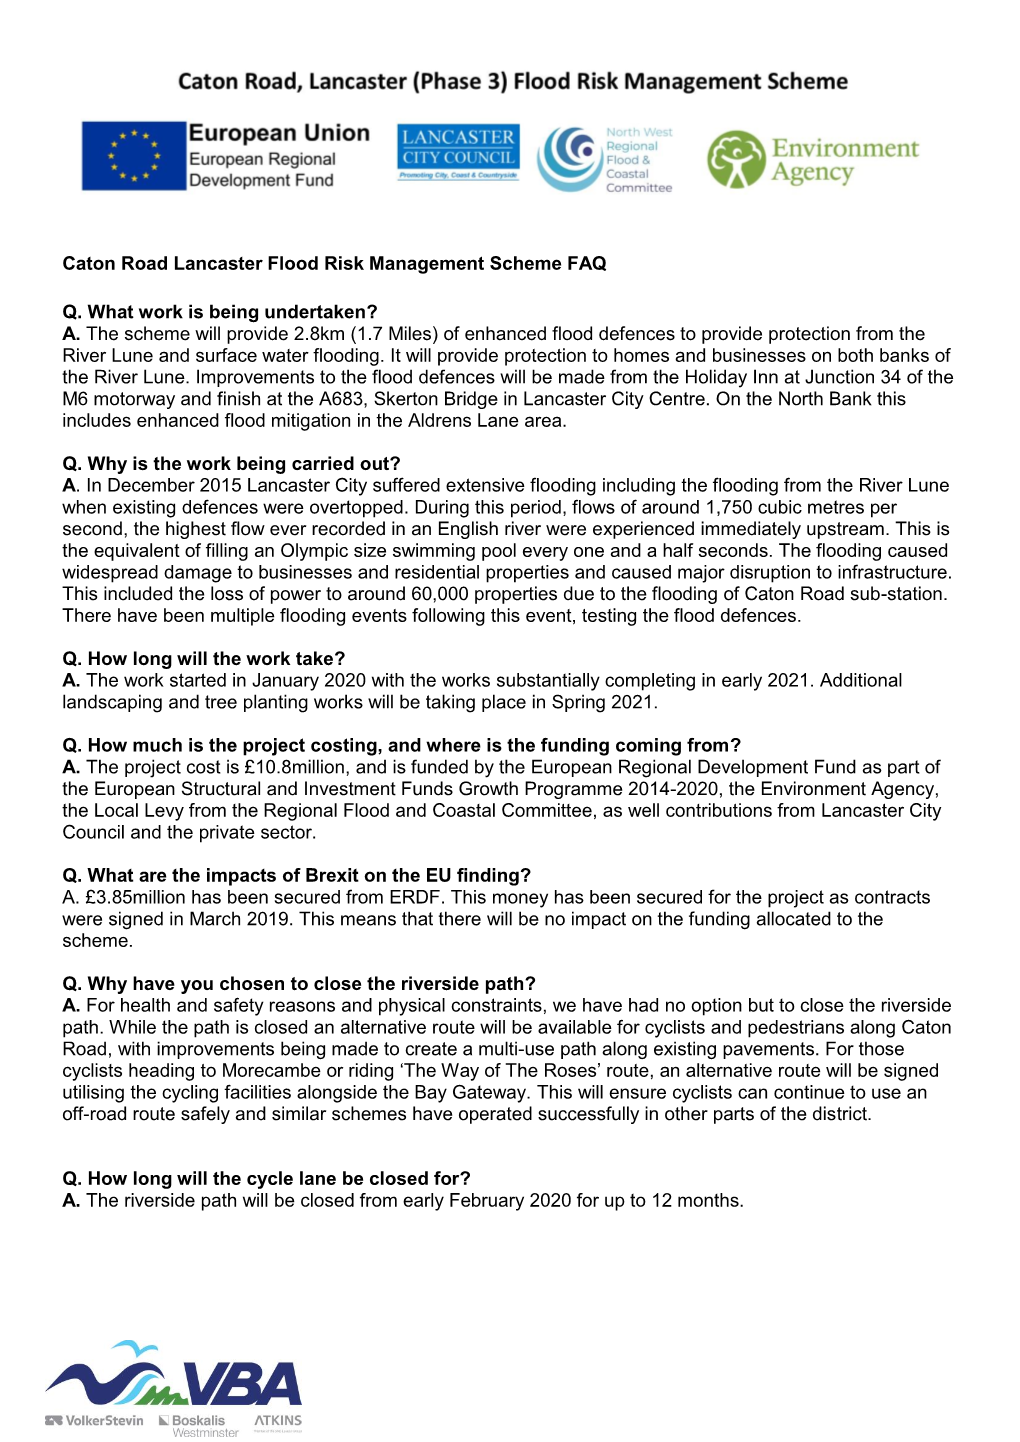 Caton Road Lancaster Flood Risk Management Scheme FAQ Q. What Work Is Being Undertaken?